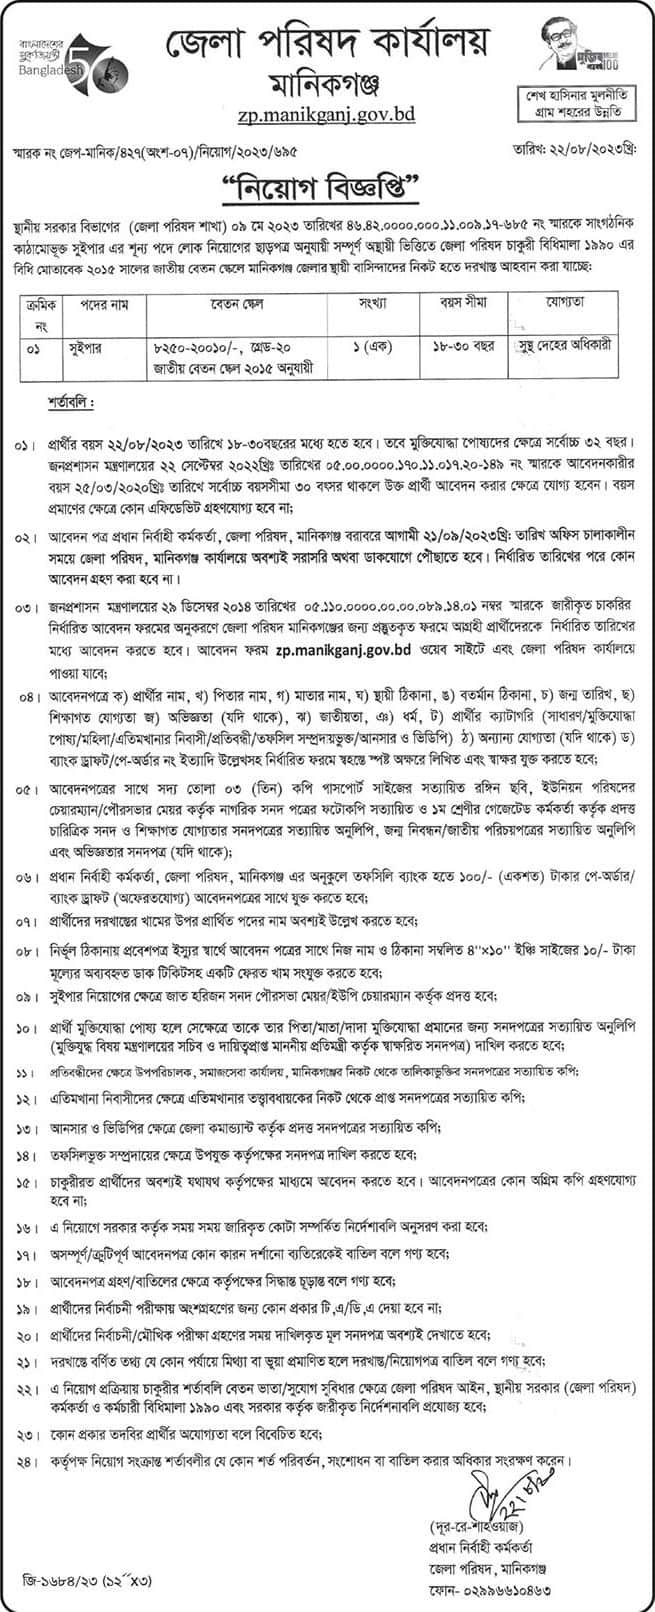 Manikganj Zila Parishad job circular